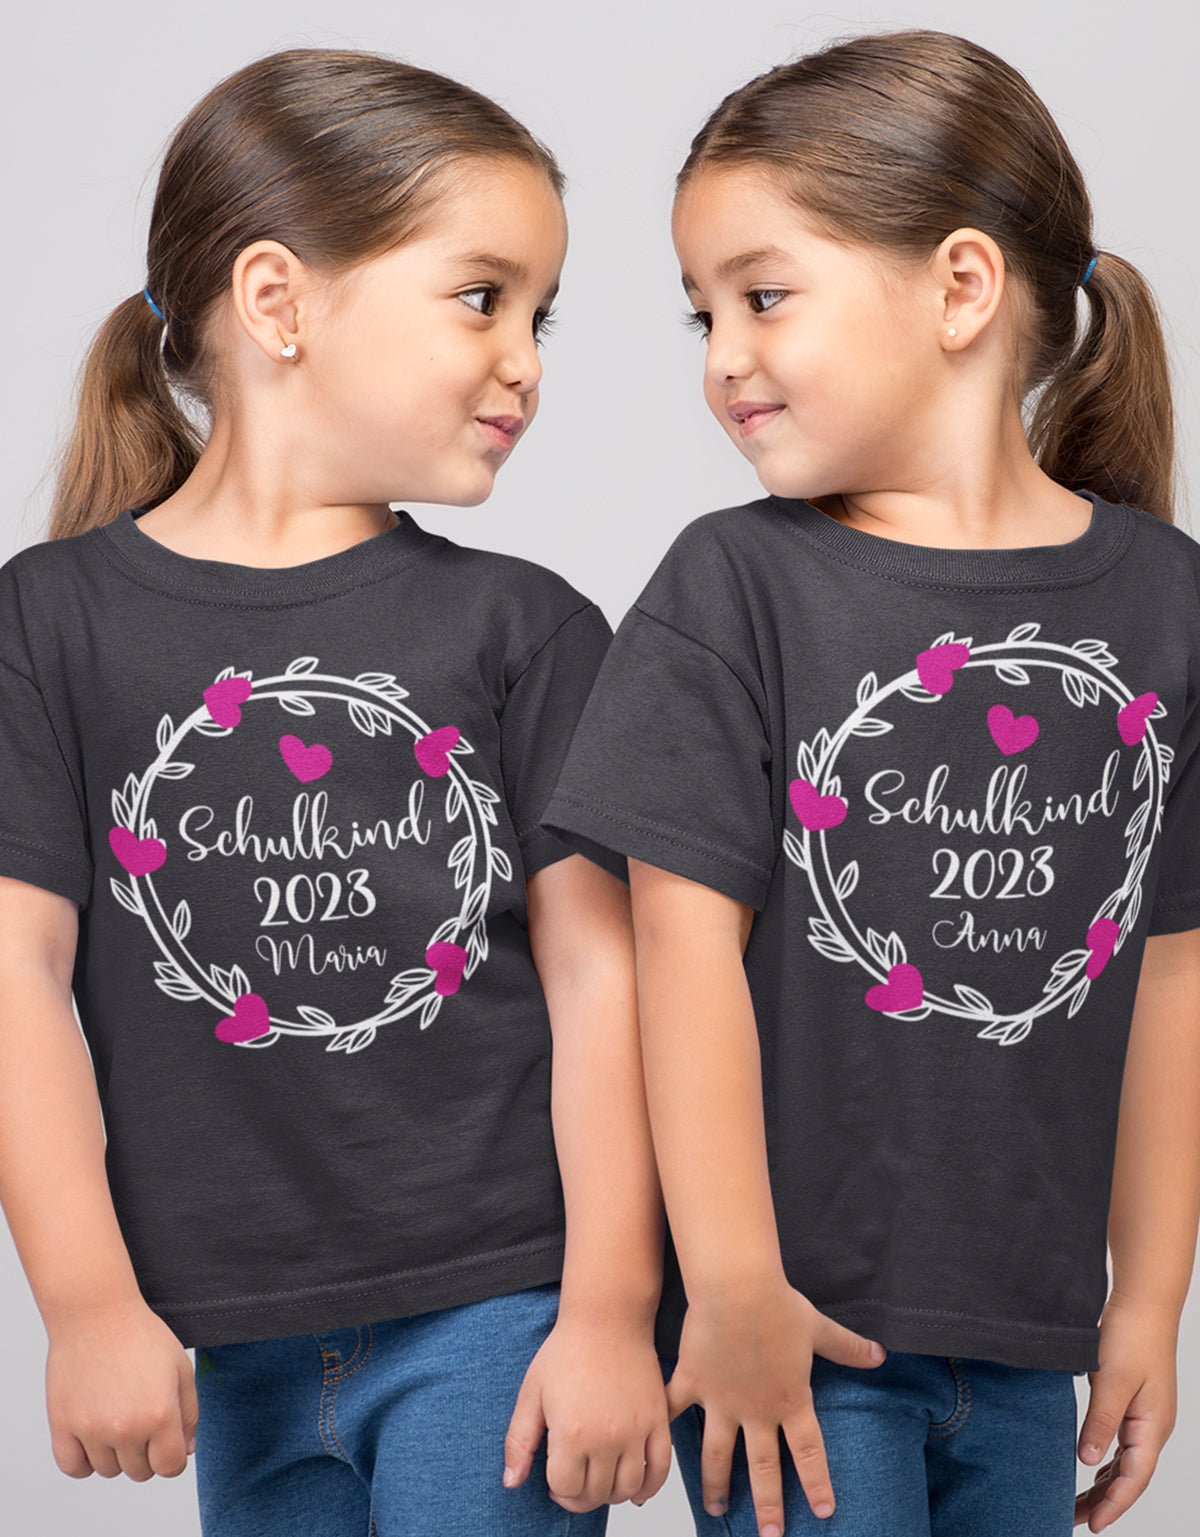 Schulkind 2023 Blumen Herzchen mit Name - Einschulung - Kinder T-Shirt 